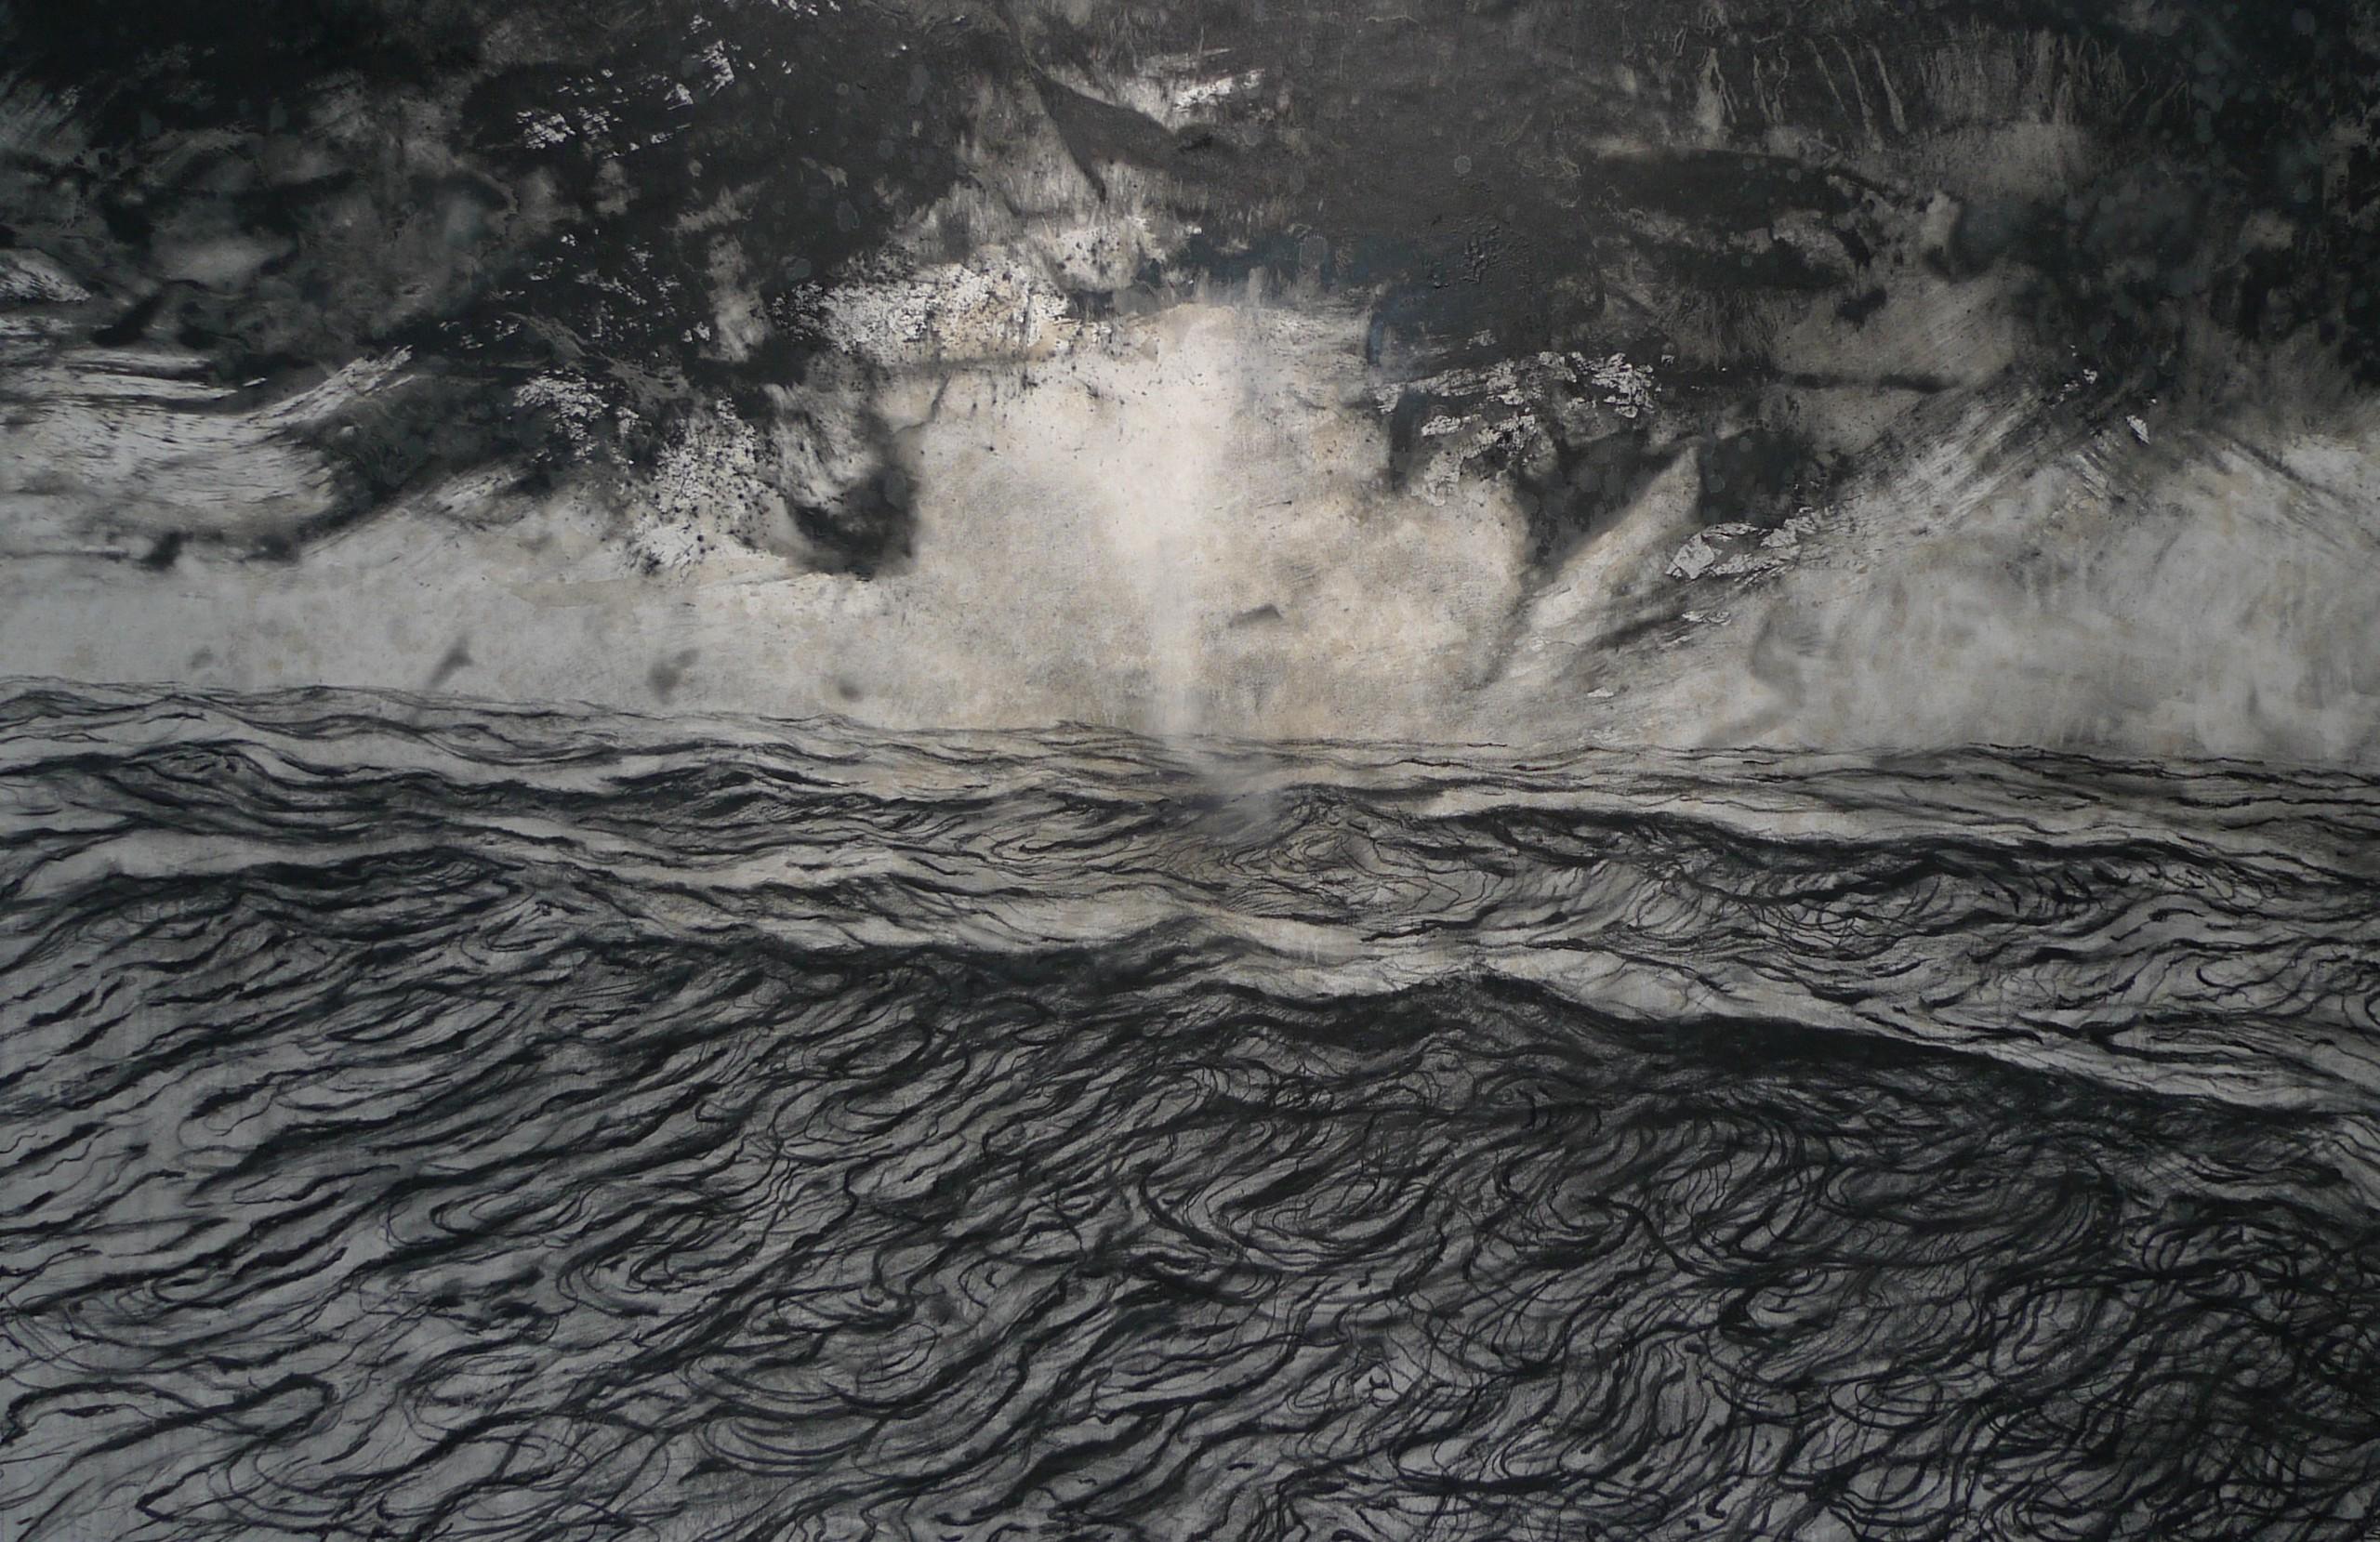 Alma by Franco Salas Borquez - Black & white painting, ocean waves, seascape